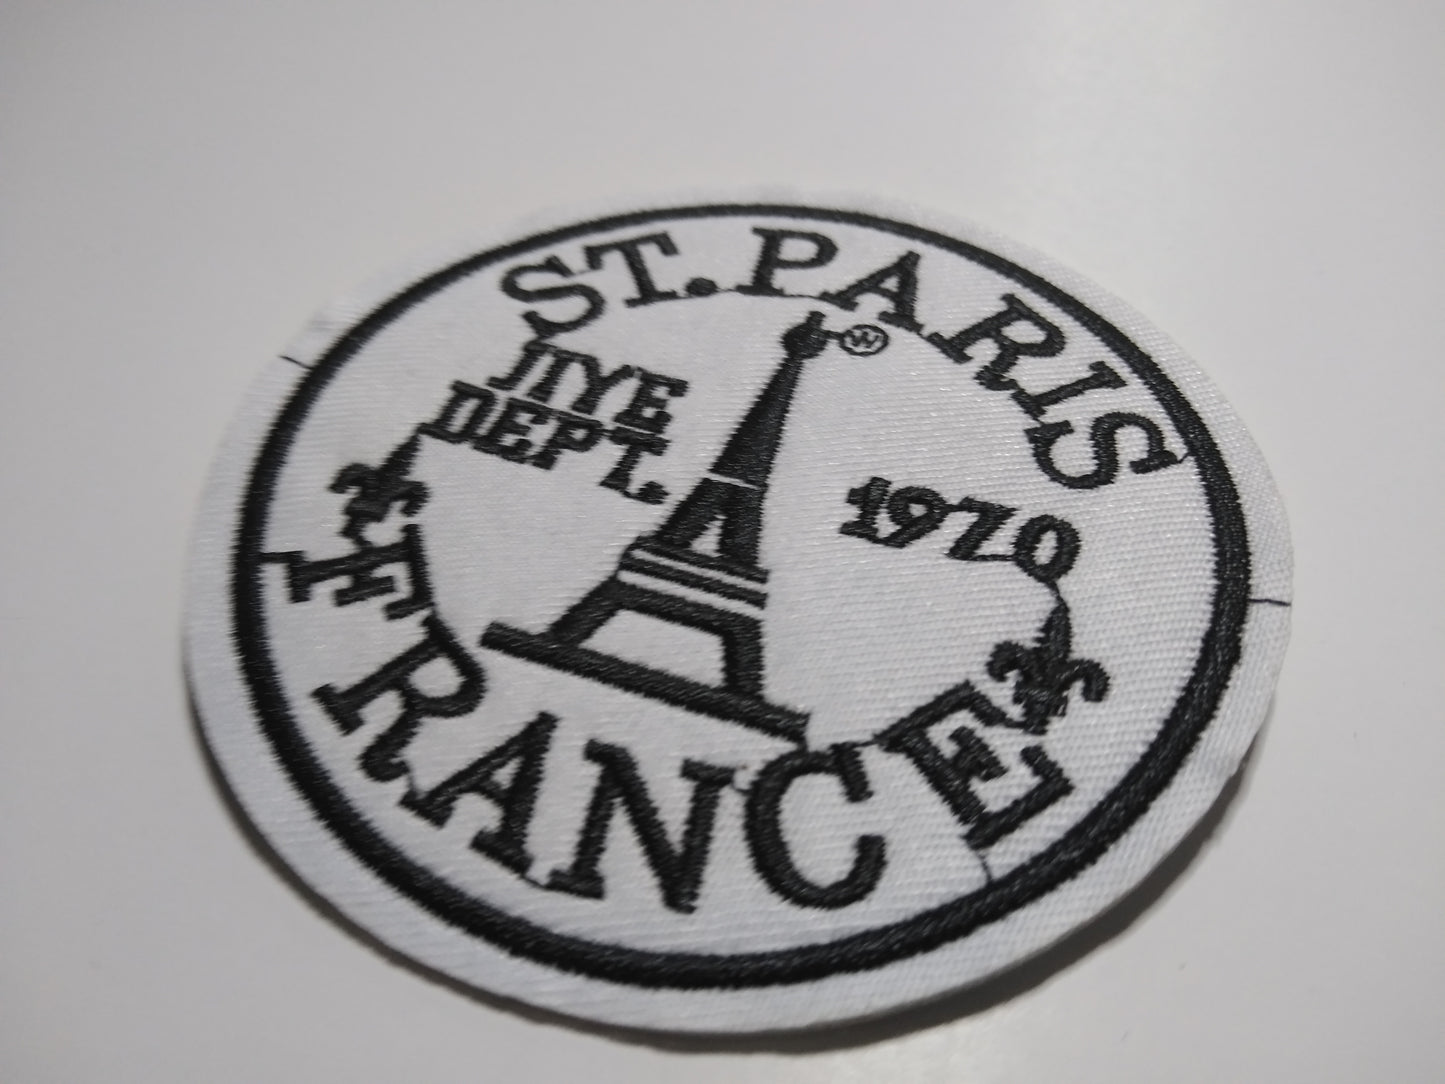 PARIS FRANCE PATCH